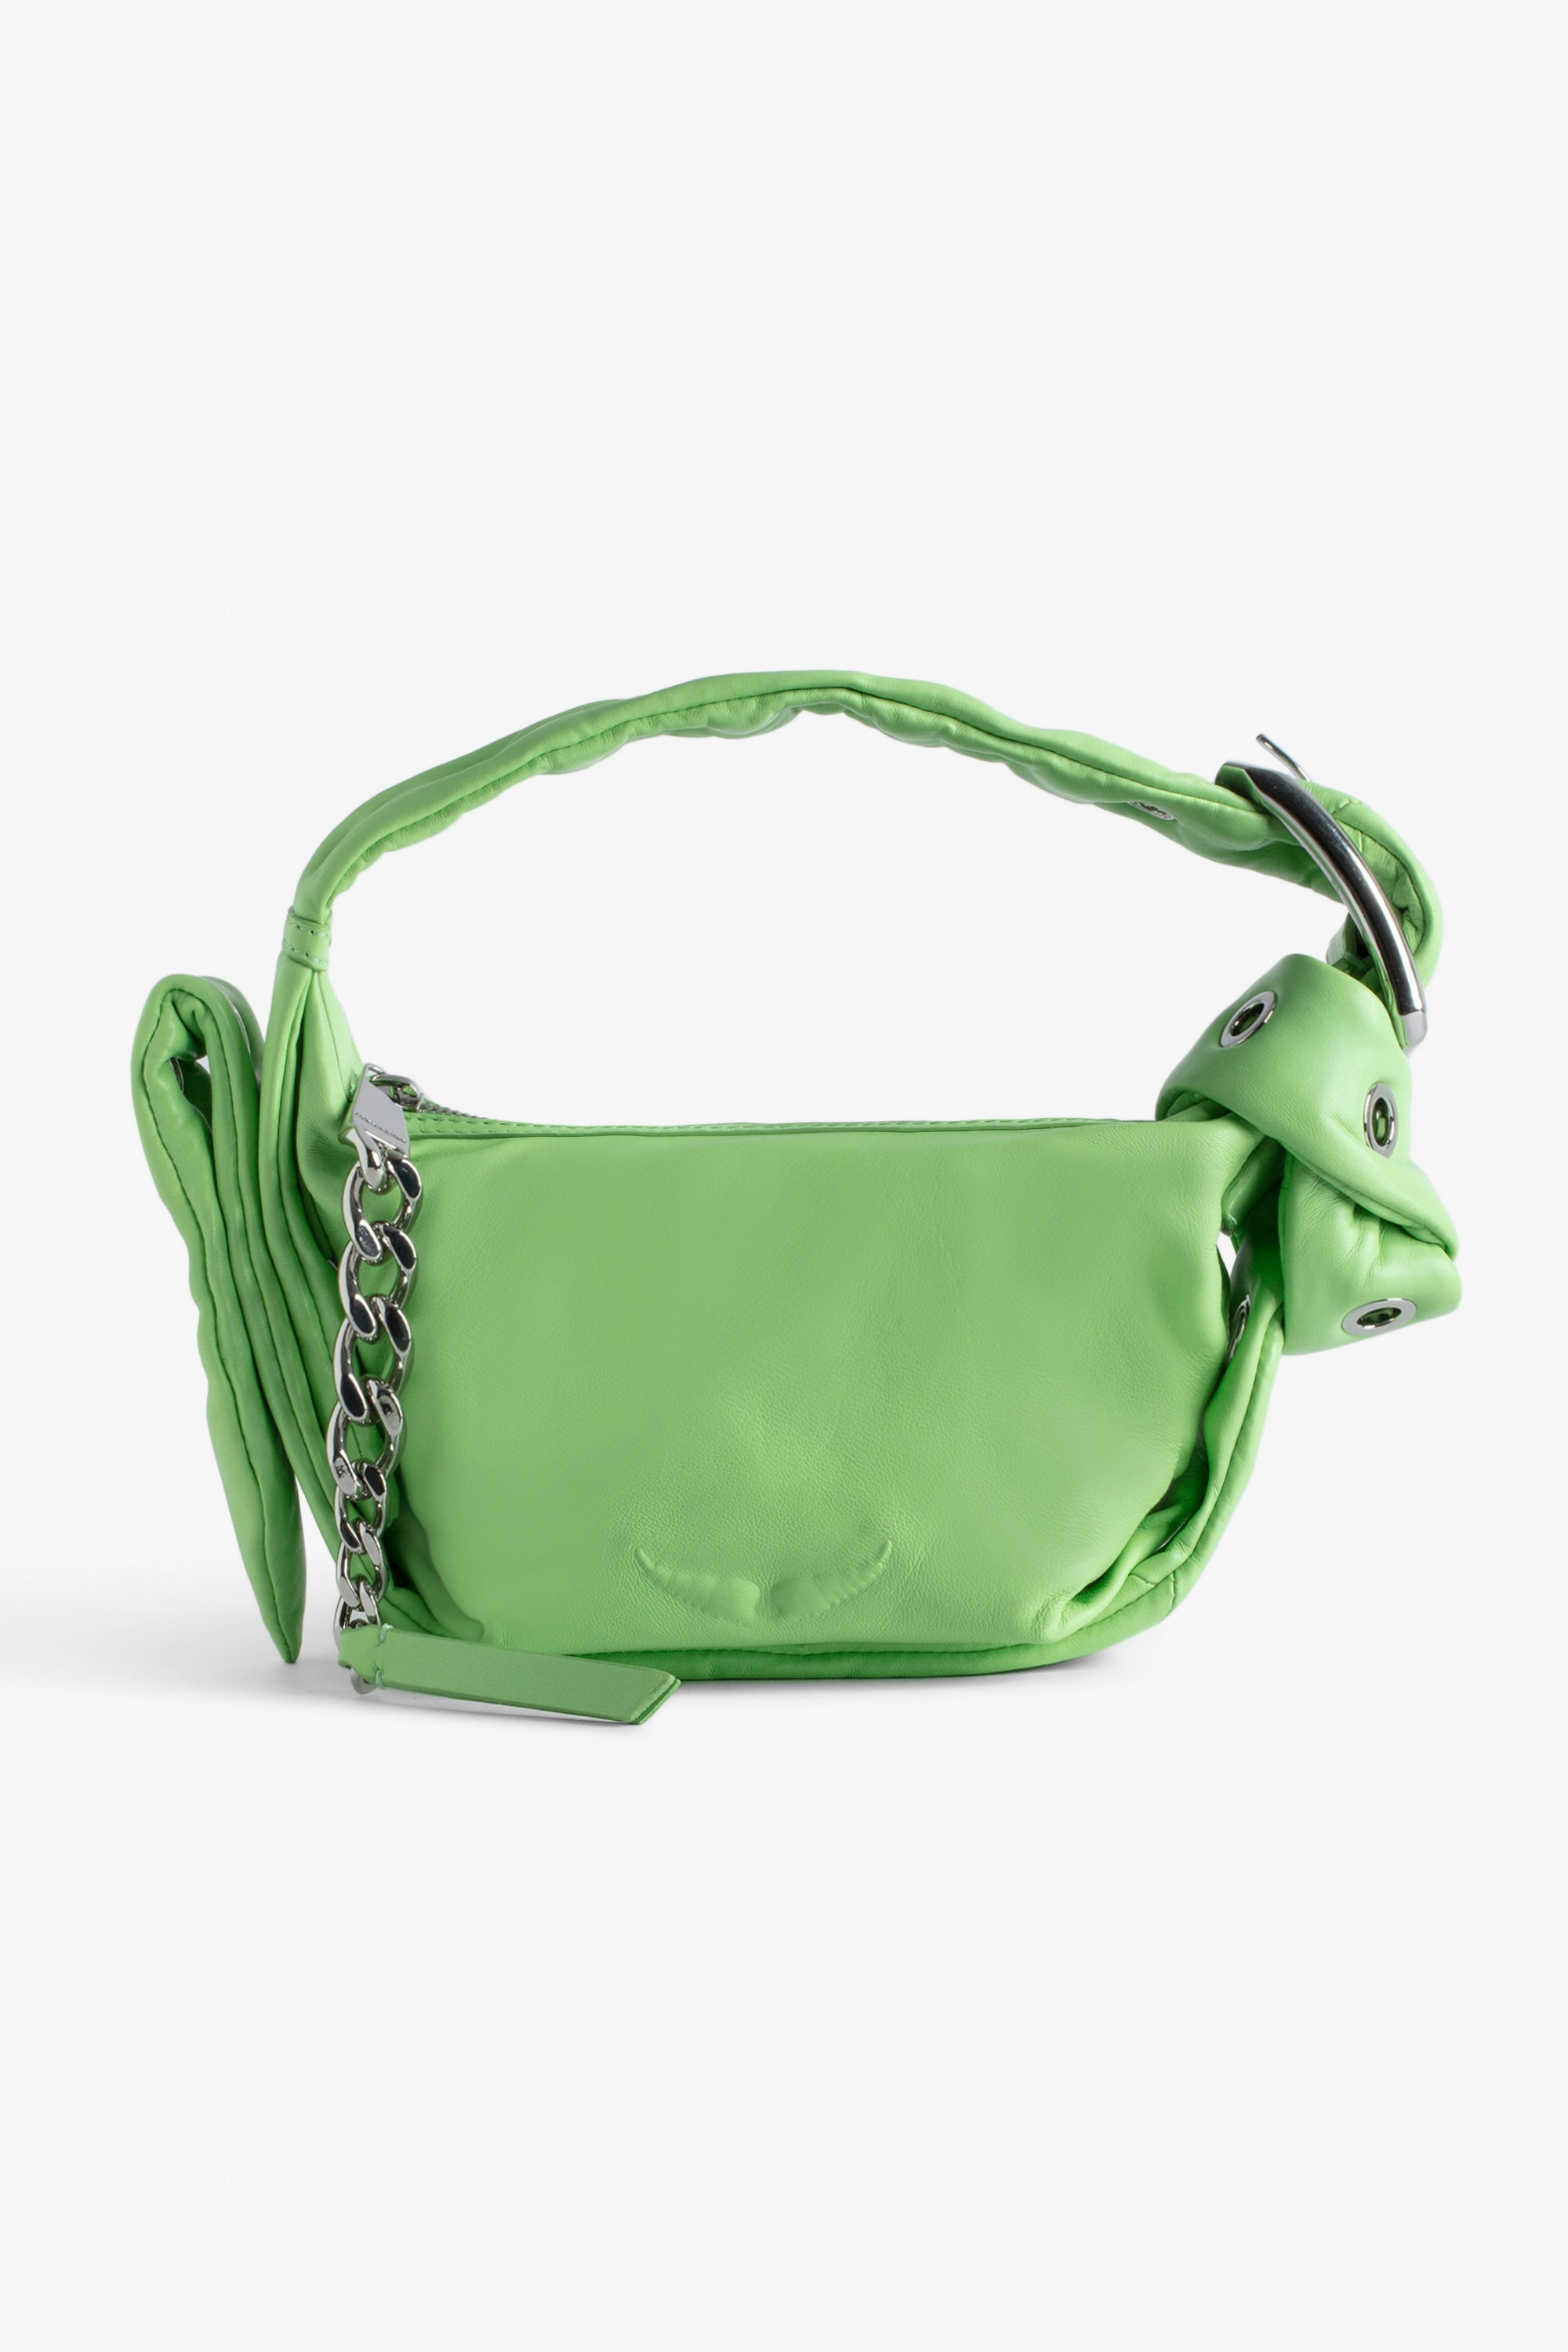 Borsa Le Cecilia XS Obsession - Piccola borsa in pelle liscia verde con tracolla e fibbia in metallo a C da donna.